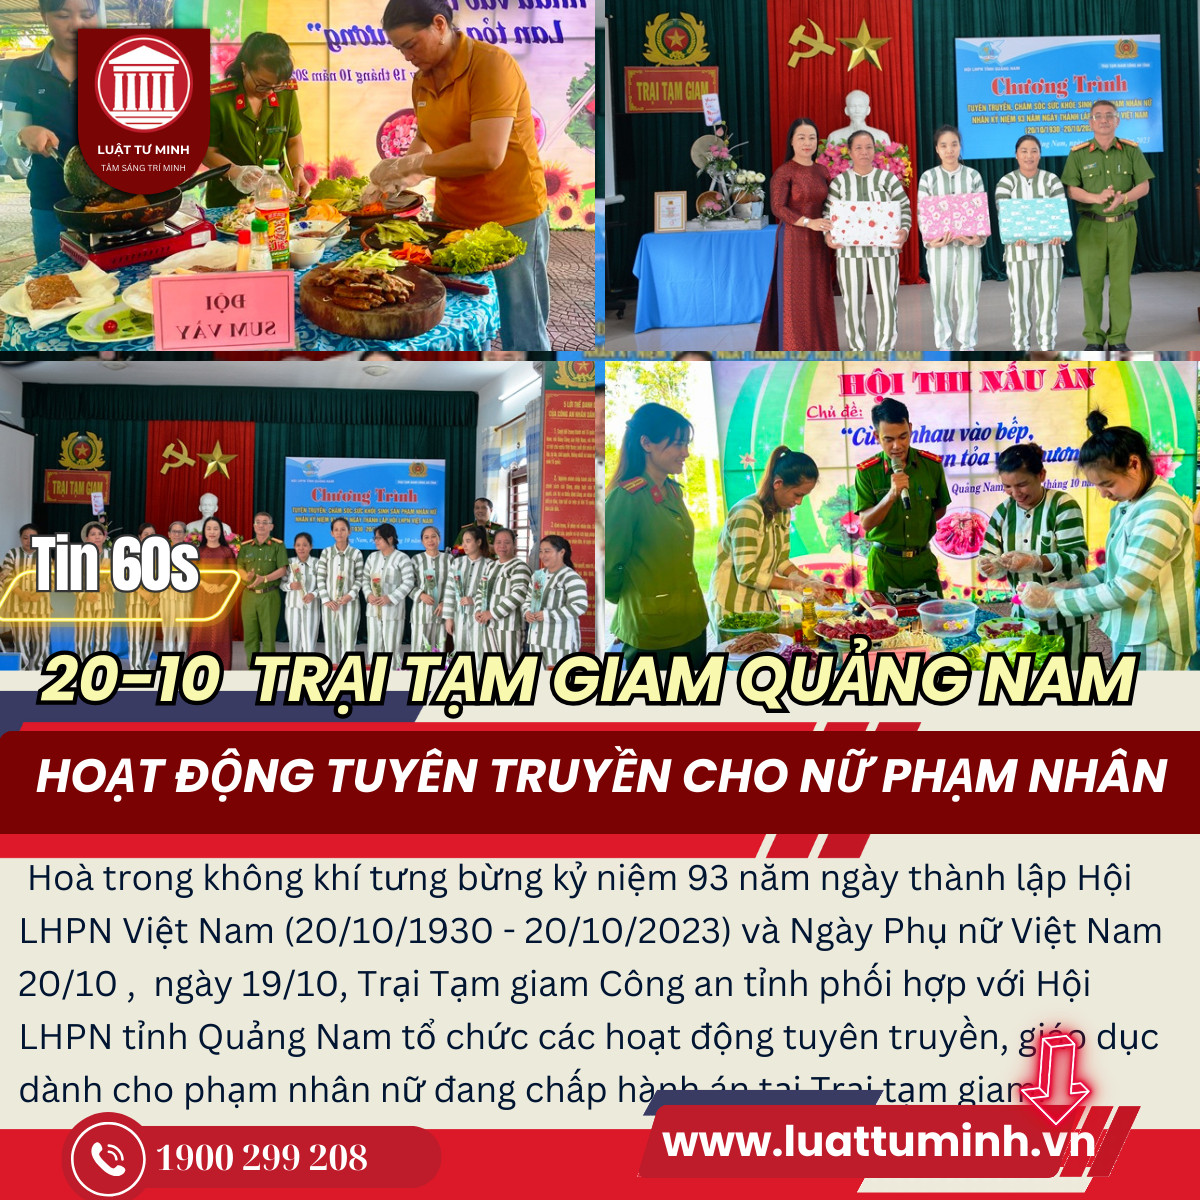 Hoạt động tuyên truyền, giáo dục dành cho nữ phạm nhân nhân dịp 20/10 - Luật Tư Minh